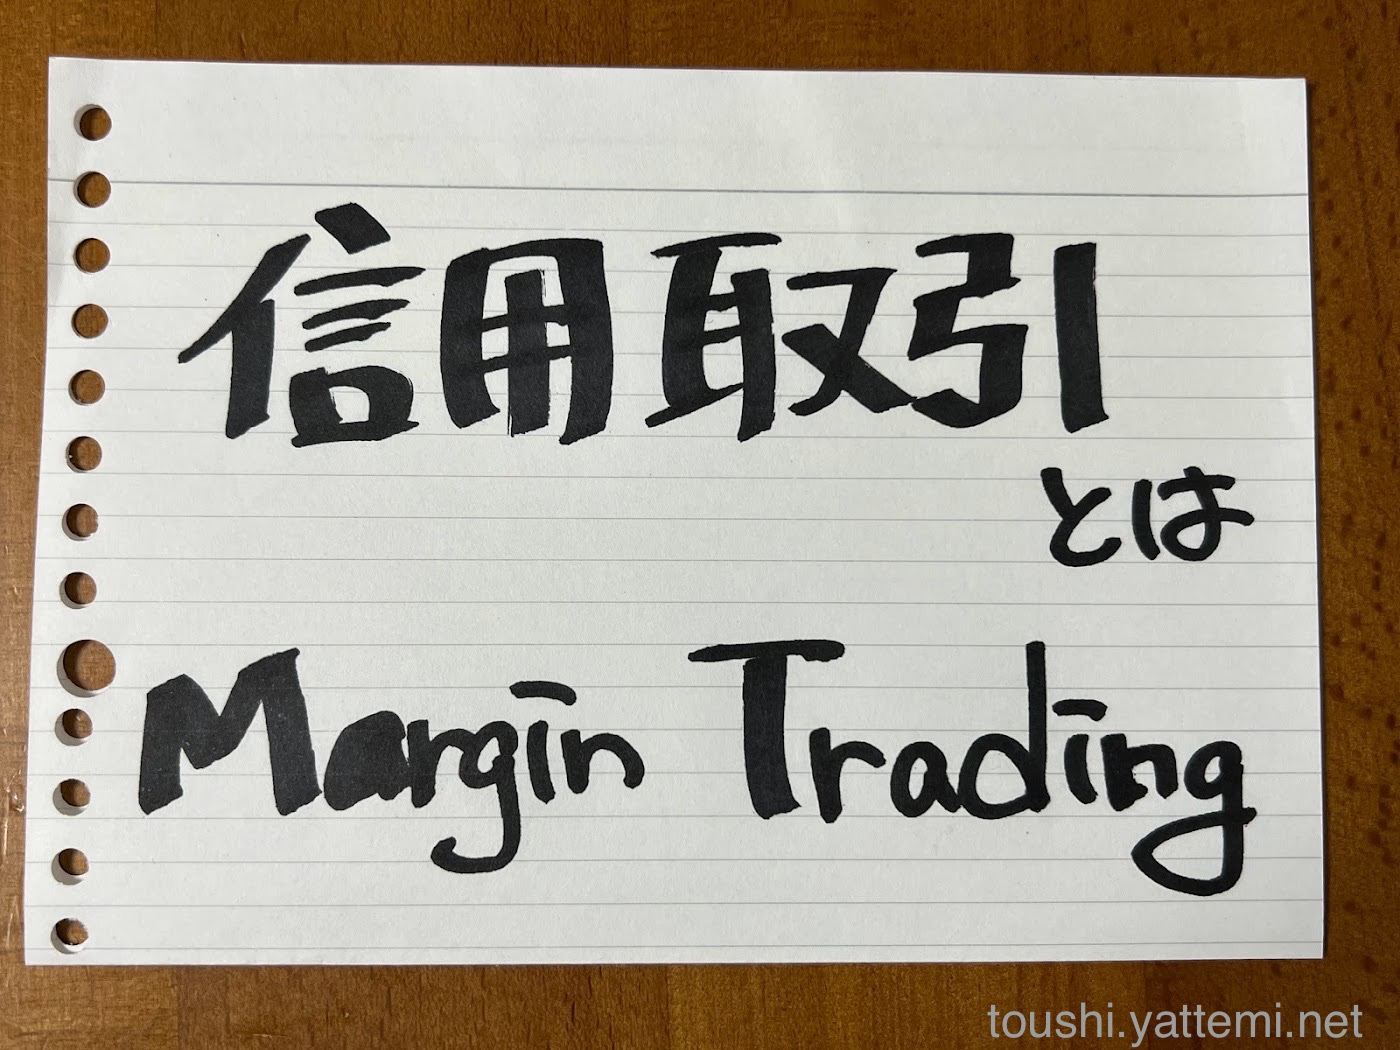 信用取引（ Margin trading）とは